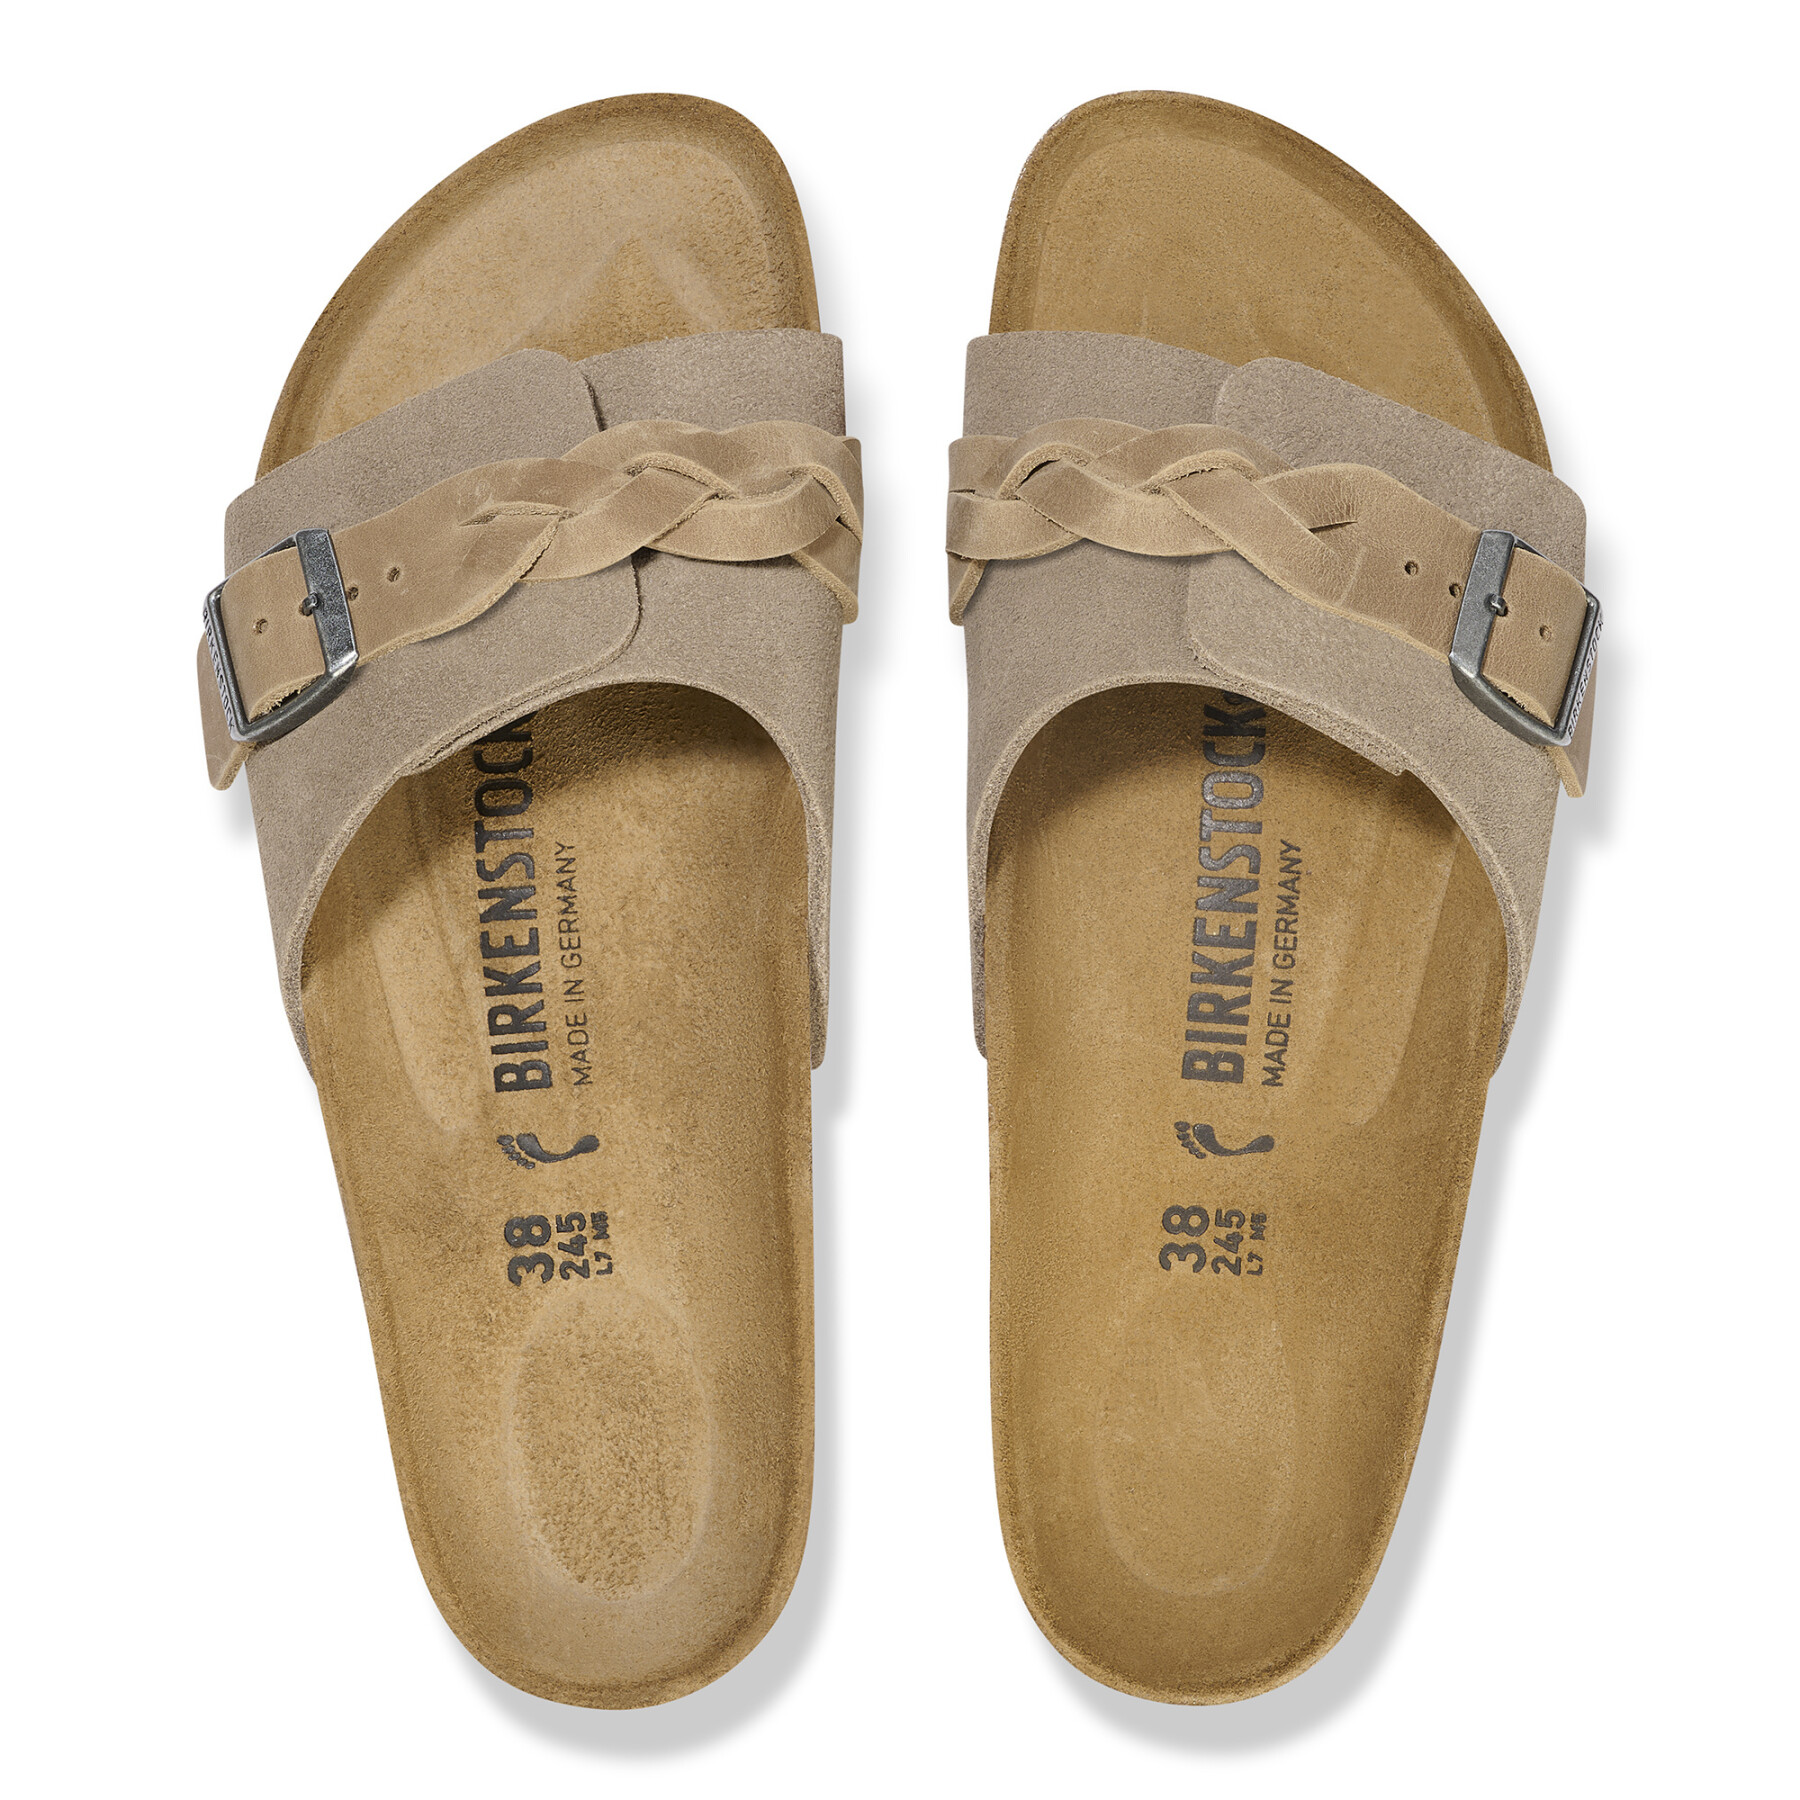 Women's sandals Birkenstock Oita Braided Suede Leather